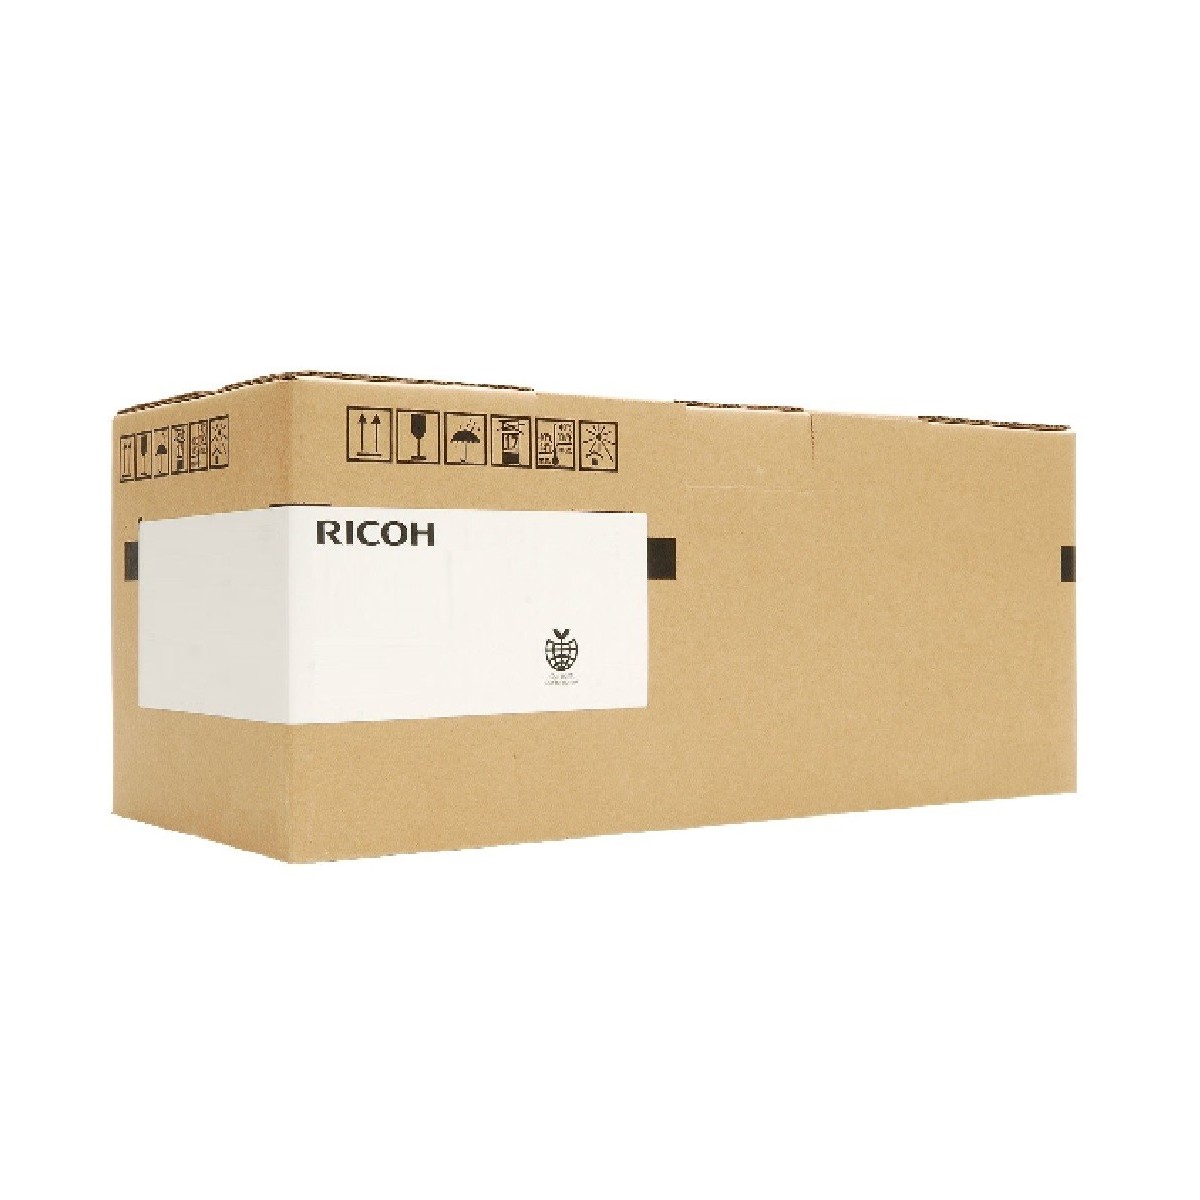 Ricoh 407153 - Transfer kit - 130000 pages - Ricoh - Aficio SP C730DN - 1 pc(s)